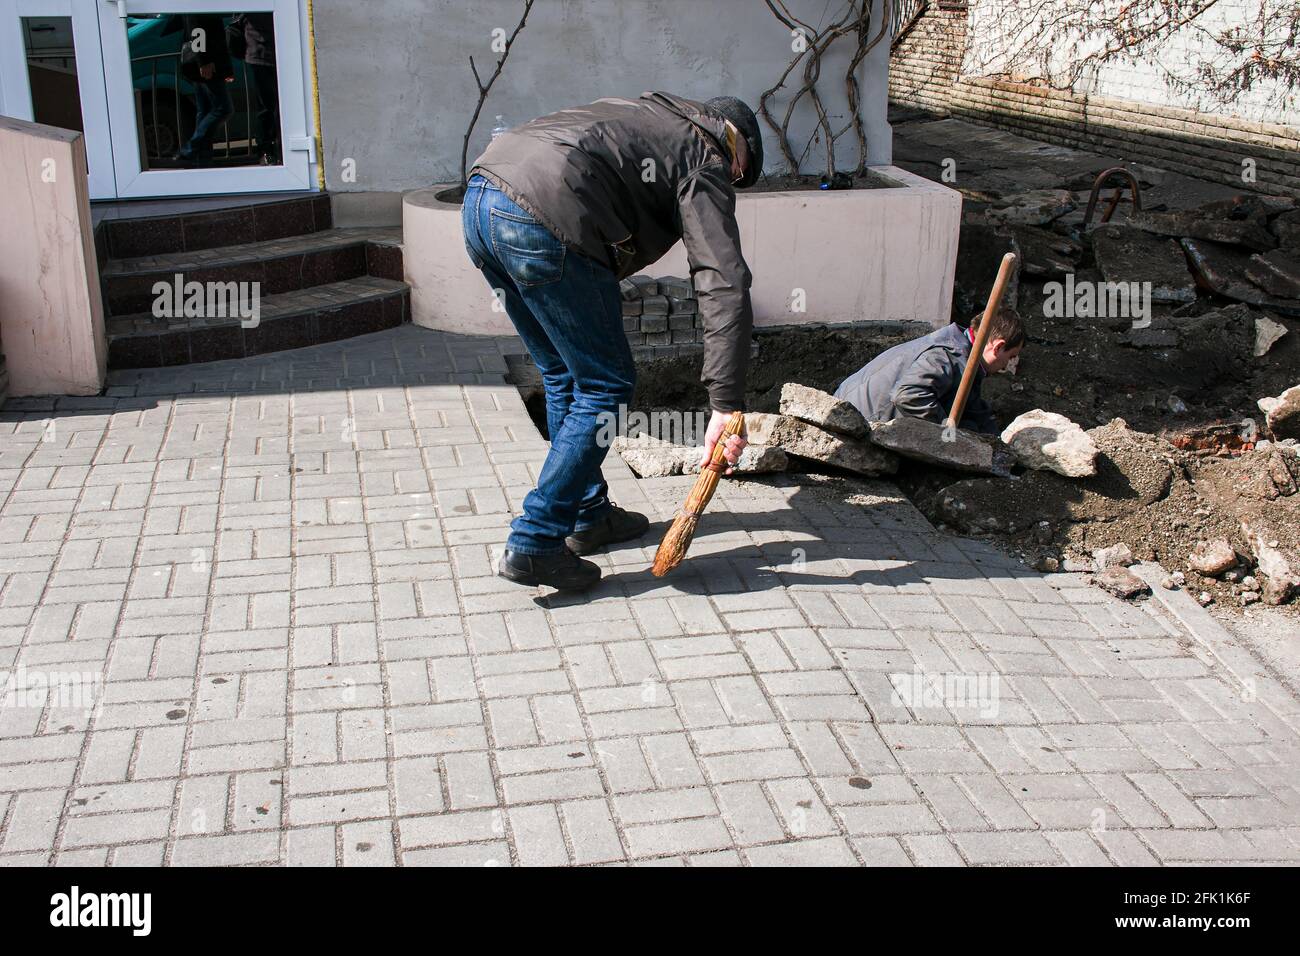 Dnepropetrovsk, Ucraina - 03.26.2021: Un lavoratore spazza su sporcizia dopo la sostituzione dei tubi fognari. Foto Stock